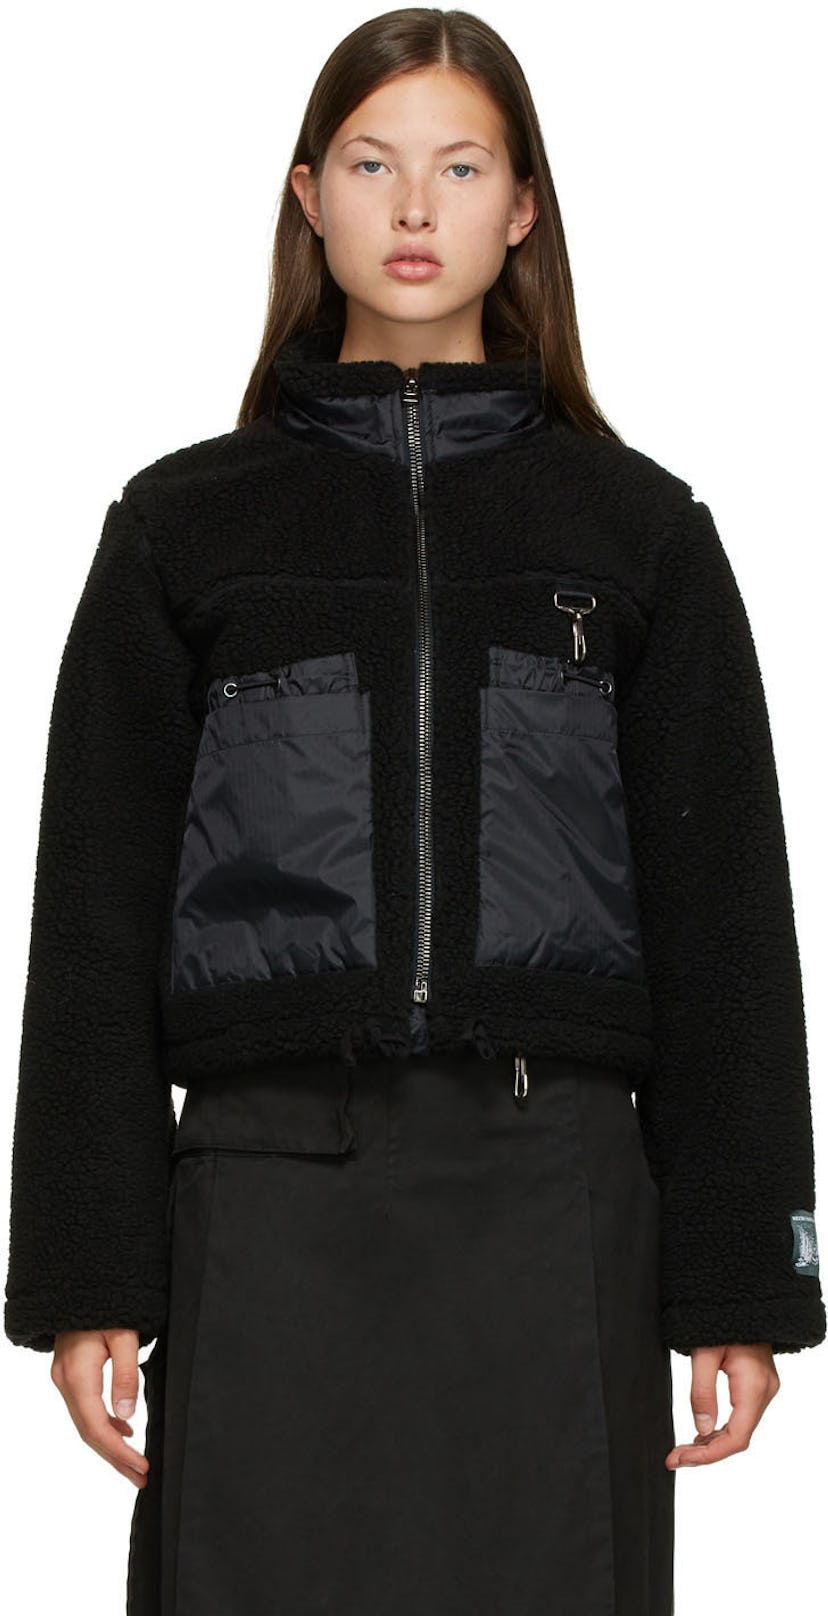 Black Sherpa Fleece Jacket